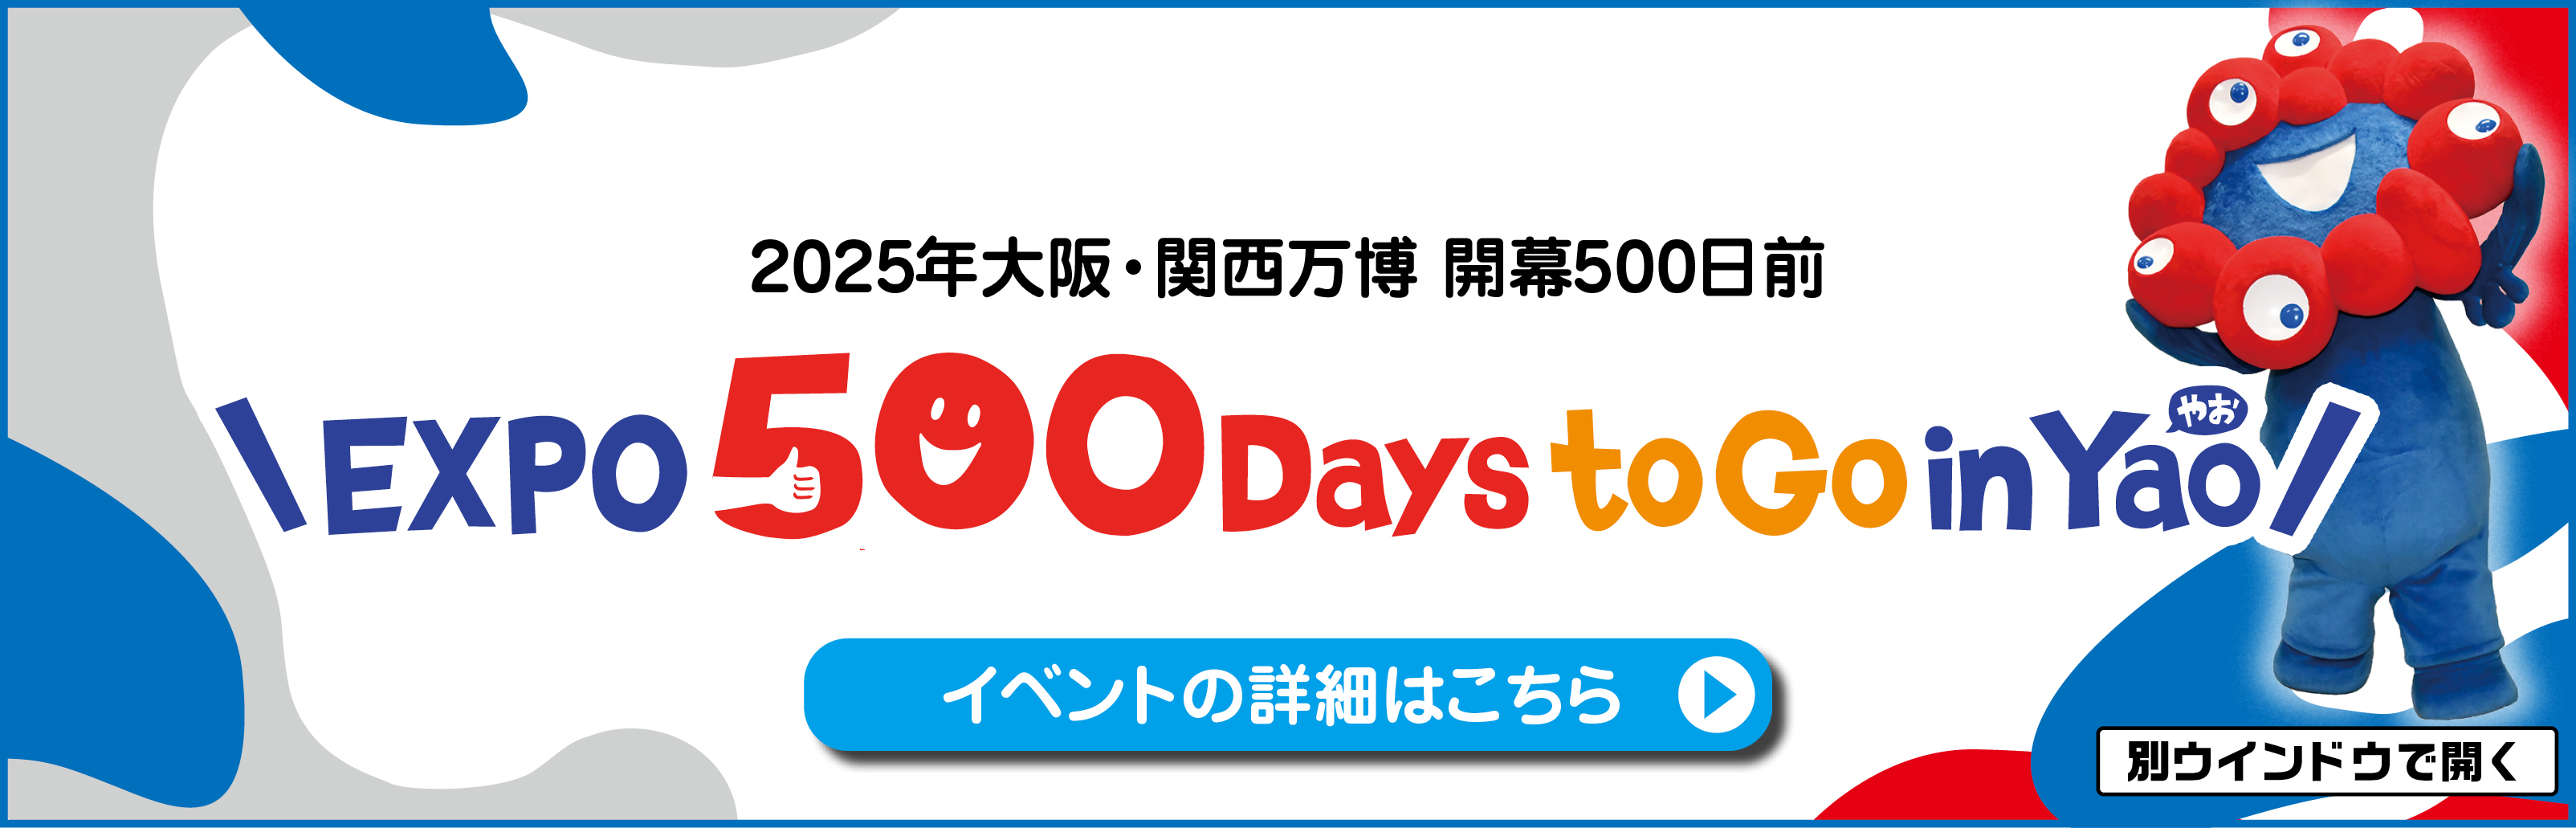 万博開催500日前月間 　EXPO 500 Days to Go in Yao